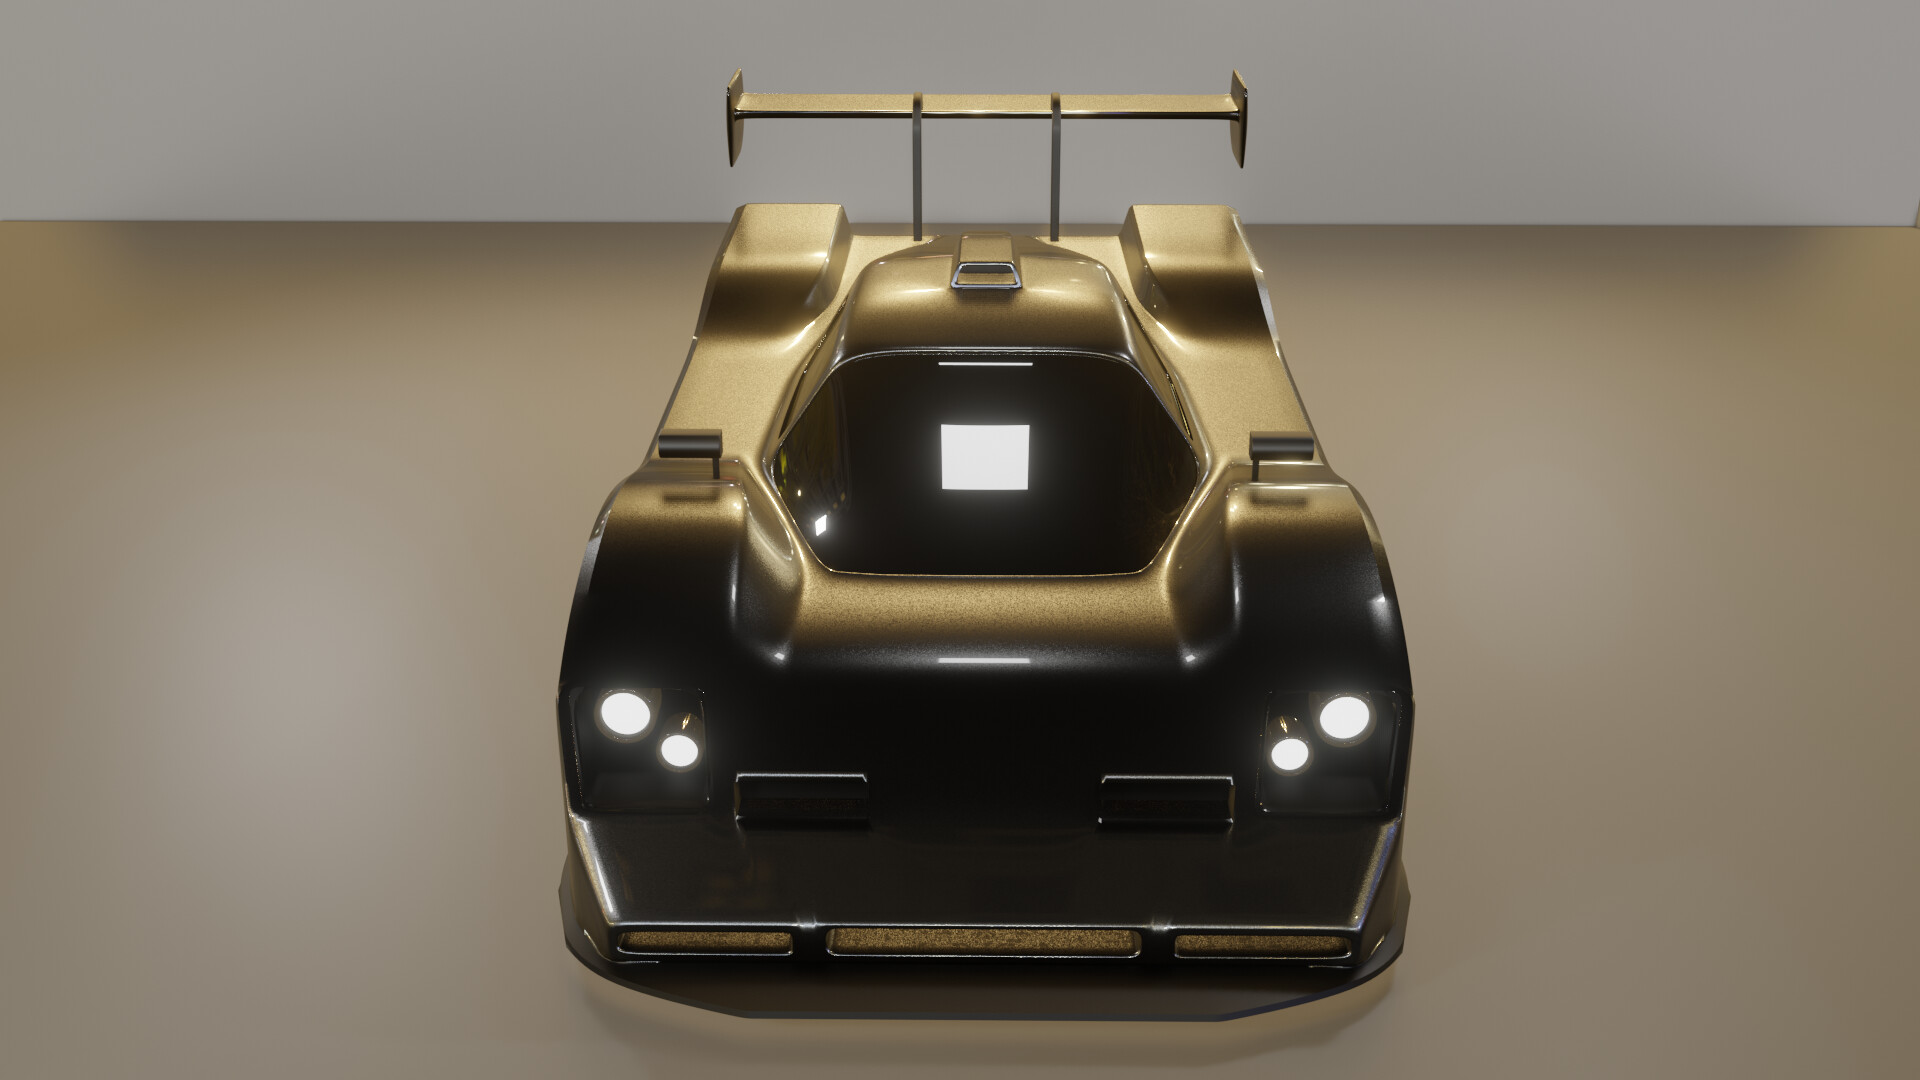 CRAZY Detailed LeMans Race Car - 3D Print Compatible STL 3D model